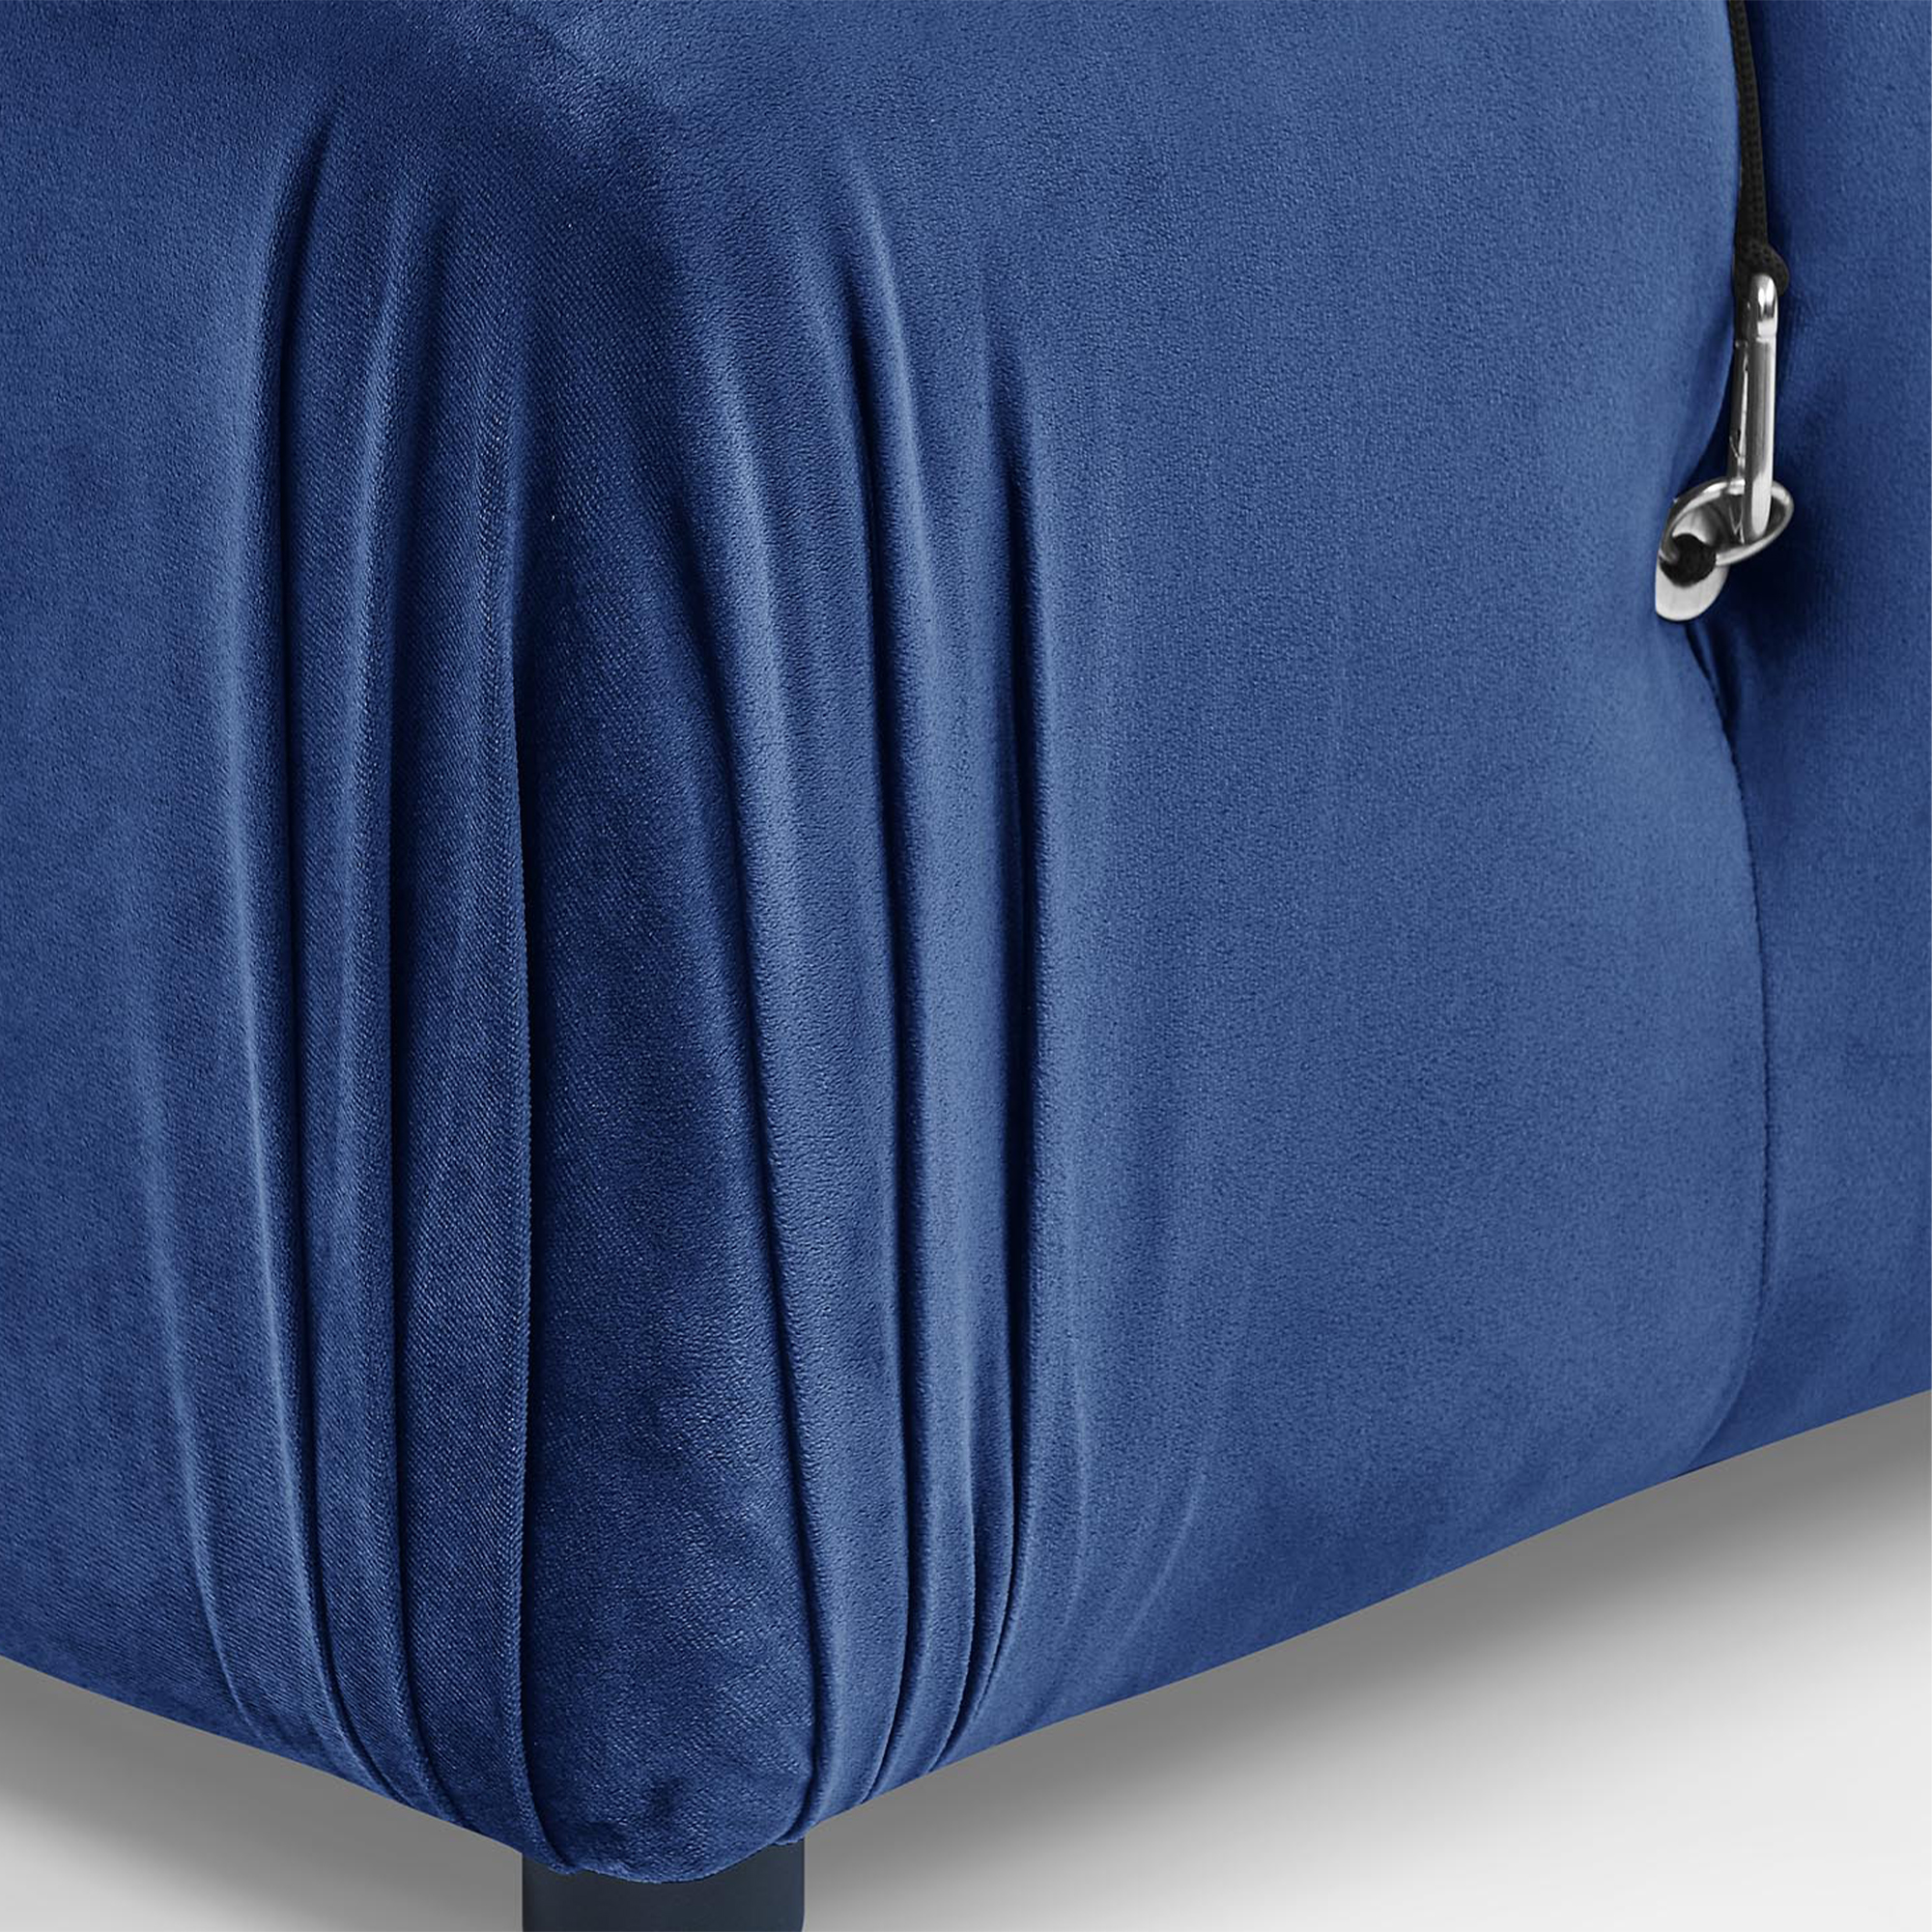 Canapé d'angle réversible en velours bleu